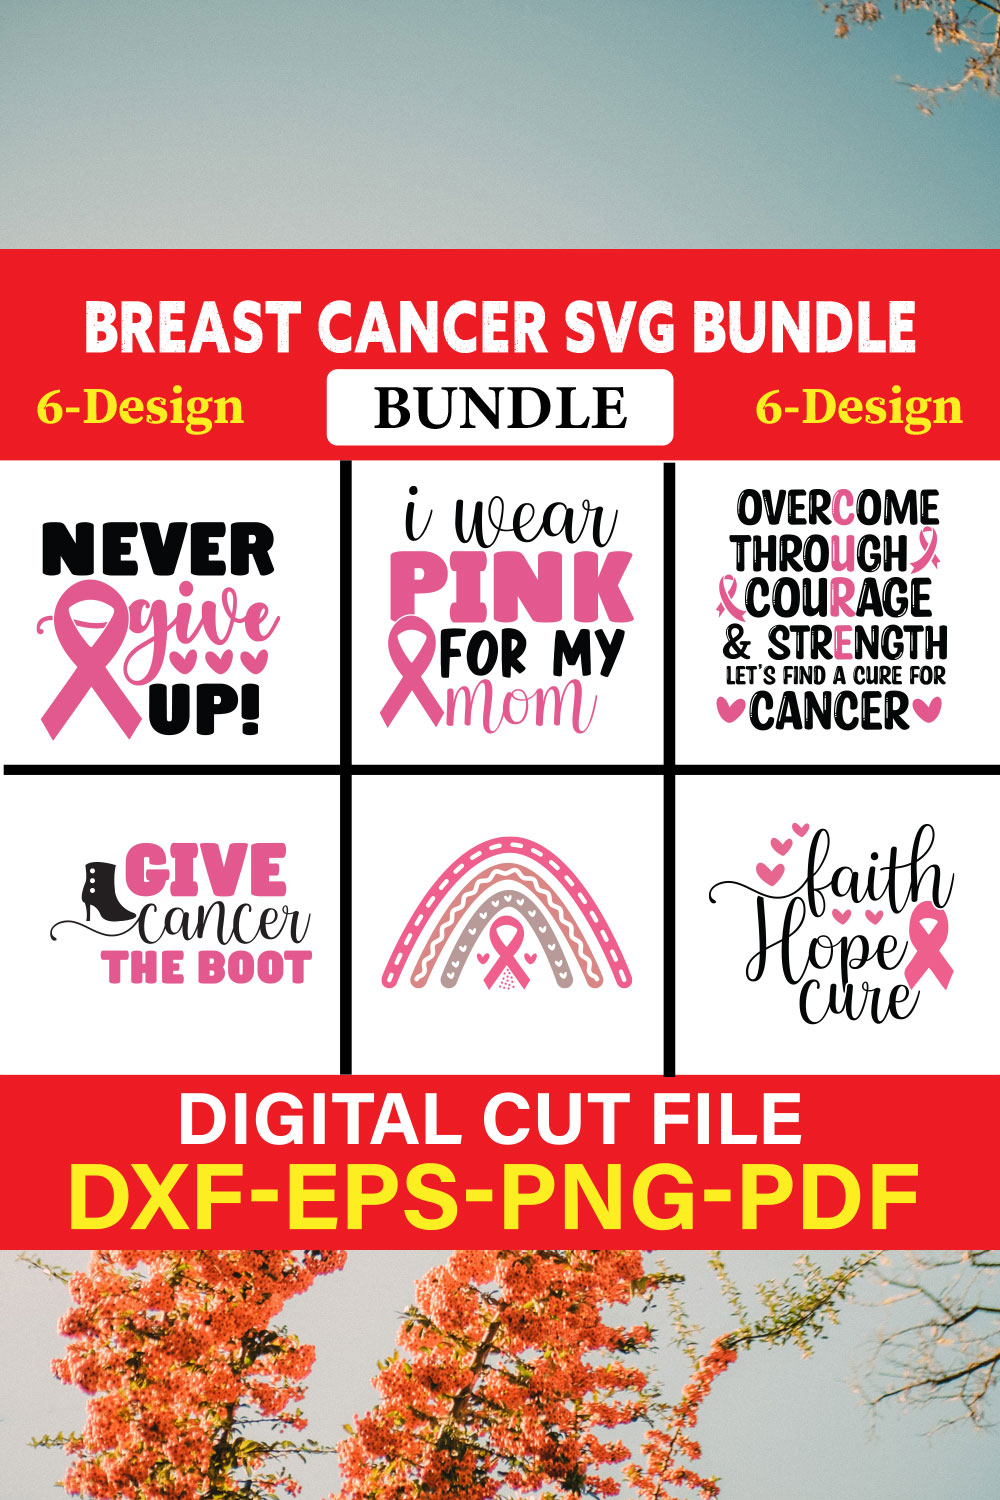 Breast Cancer SVG Bundle, Cancer SVG, Cancer Awareness, Vol-03 pinterest preview image.